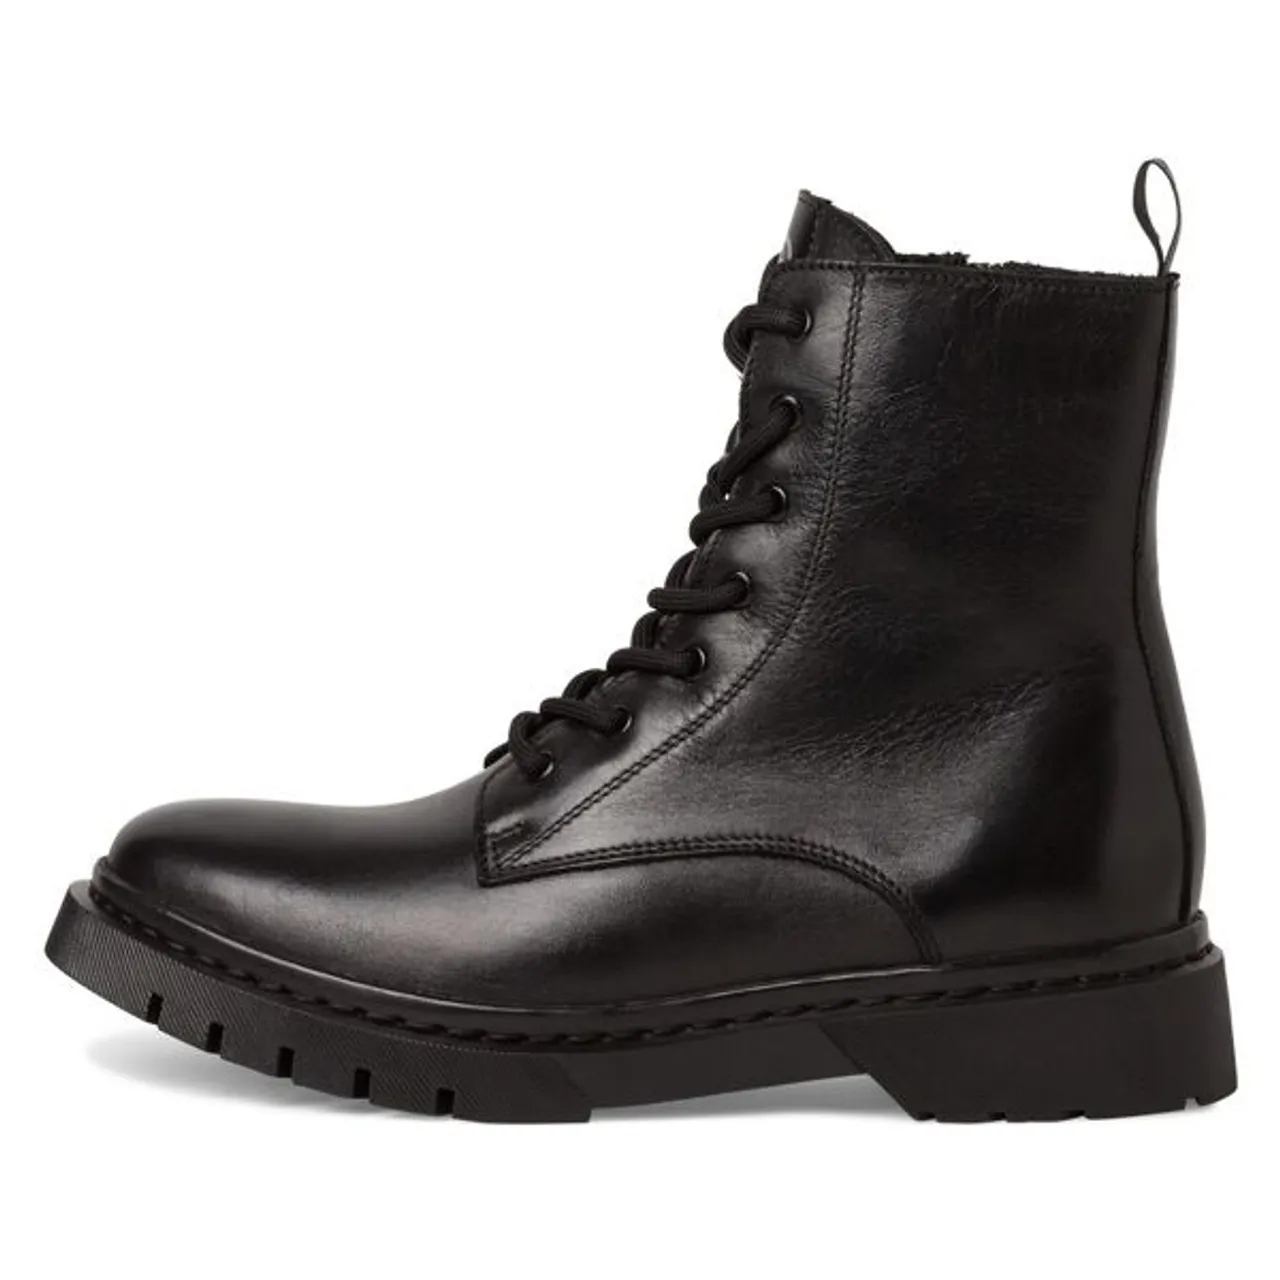 Winterstiefelette TAMARIS Gr. 41, schwarz Damen Schuhe Reißverschlussstiefeletten mit Reißverschluss für den bequemen Einstieg